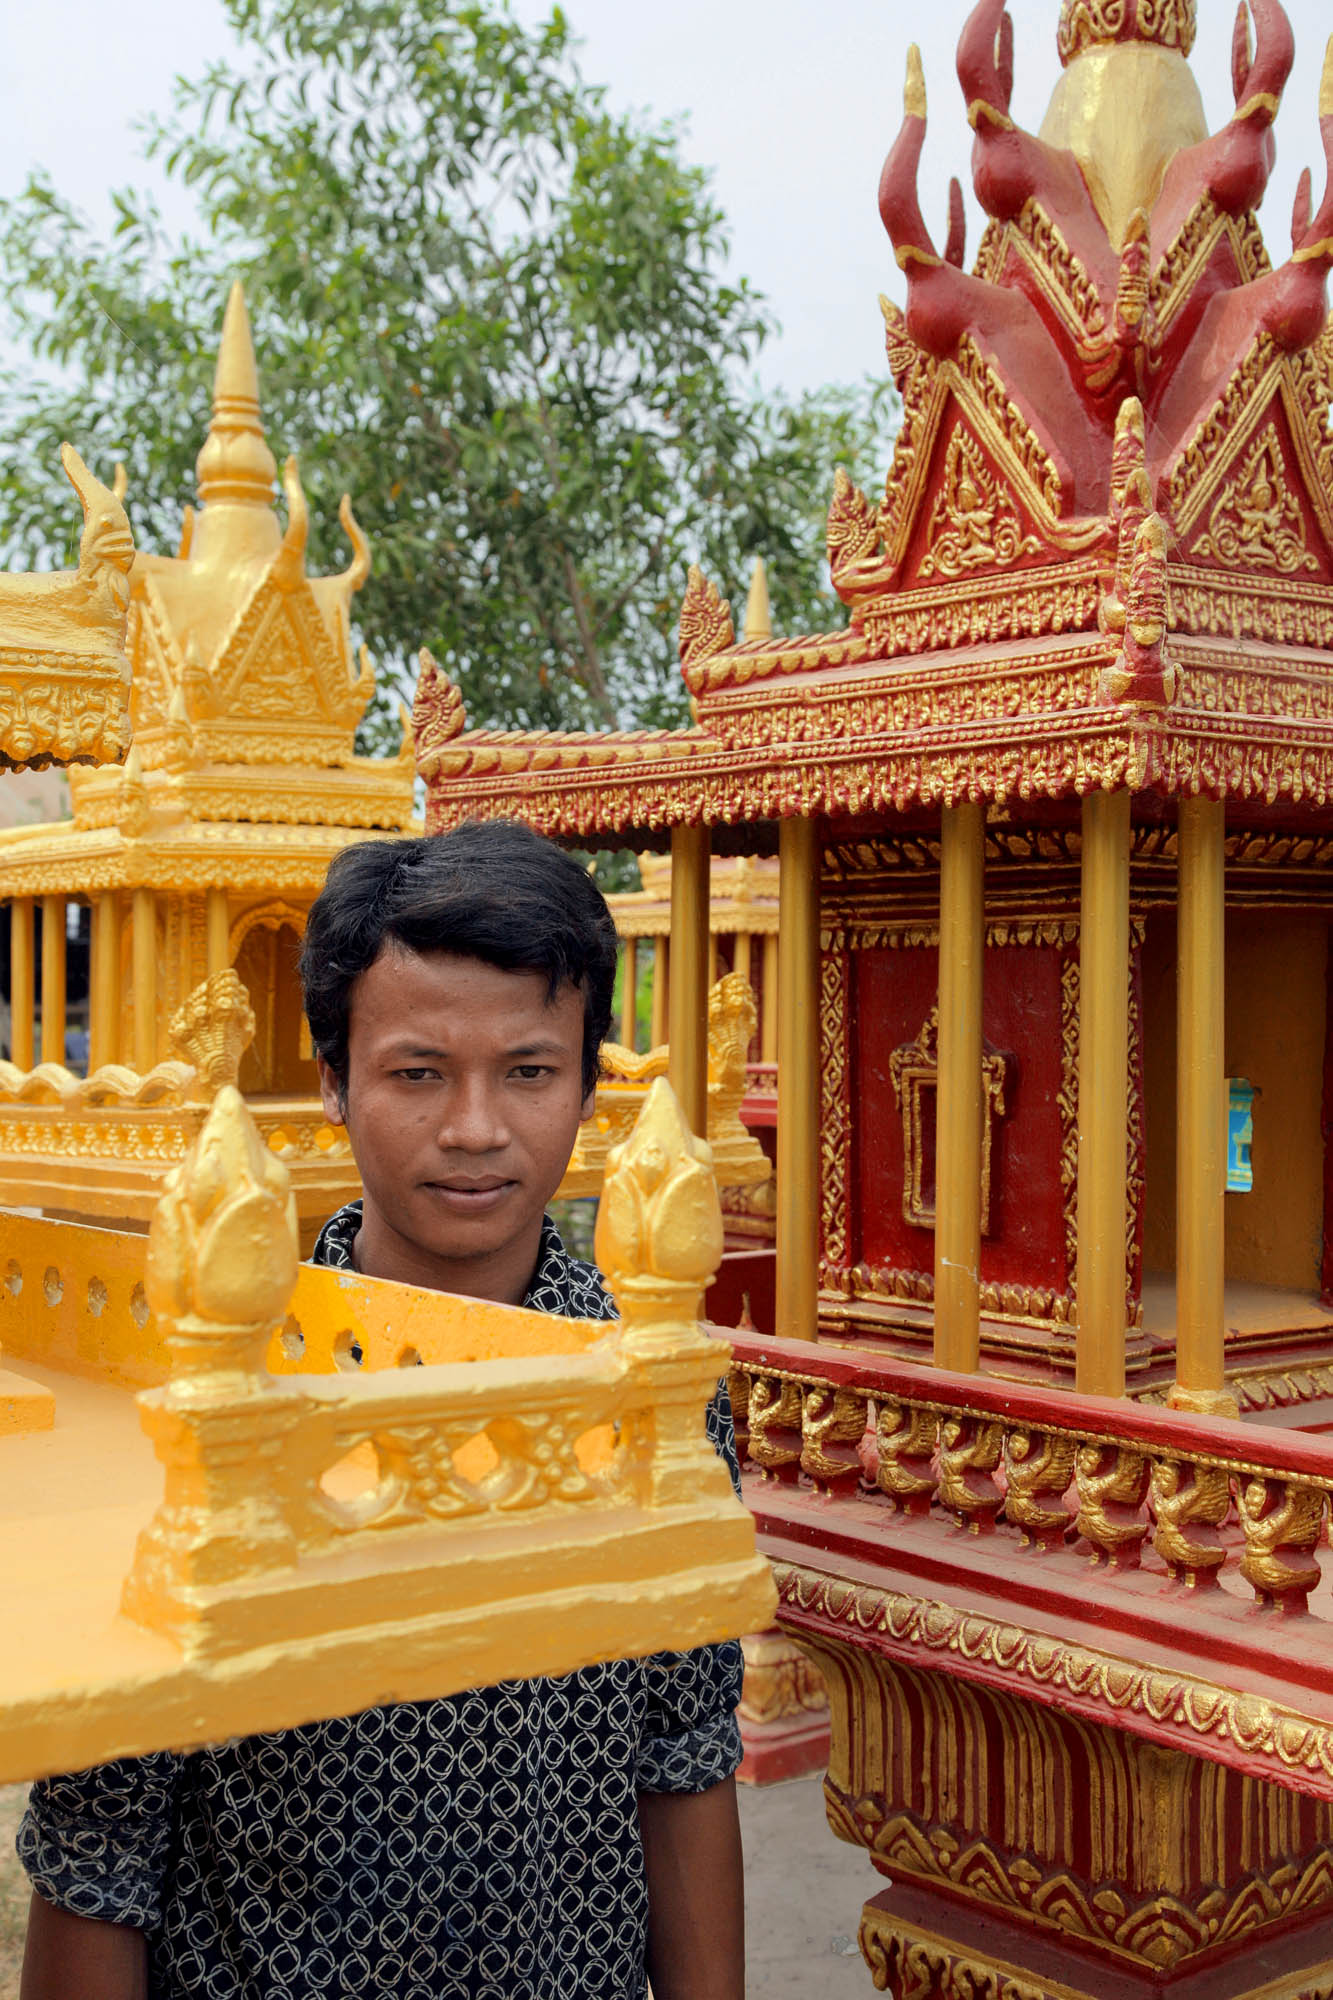 bill-hocker-shirne-maker-near-siem-reap-cambodia-2010